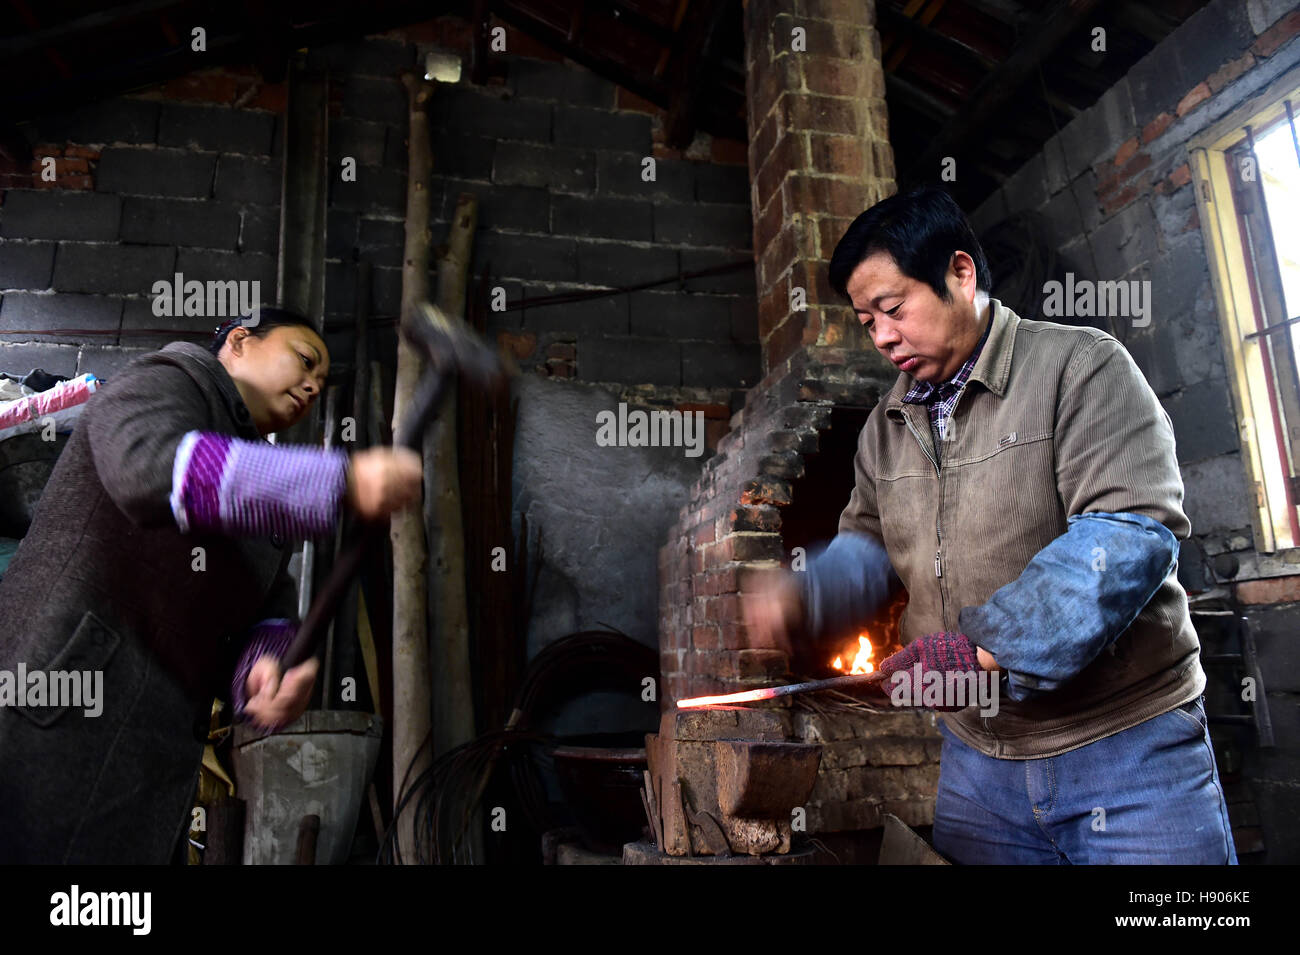 (161117)--JINGXIAN, 17. November 2016 (Xinhua)--Yu Songtao und seine Frau schlug die Bewehrung für die Herstellung von Schere in Houshan Dorf unter Dingjiaqiao Stadt Jingxian County, der ostchinesischen Provinz Anhui, 17. November 2016. Yu Songtao, die Erbin der Technik der Schere Produktion in Houshan Dorf leistet Schere seit 35 Jahren seit er 15 Jahre alt war. Es gibt über 80 Verfahren bei der Herstellung der Schere. Yu ist nur ein Dutzend von ihnen jeden Tag wegen der komplizierten Handwerk möglich. Er wünscht sich, dass mehr Menschen über die Technik so, dass dieser immateriellen erfahren kulturellen Welterbe Stockfoto